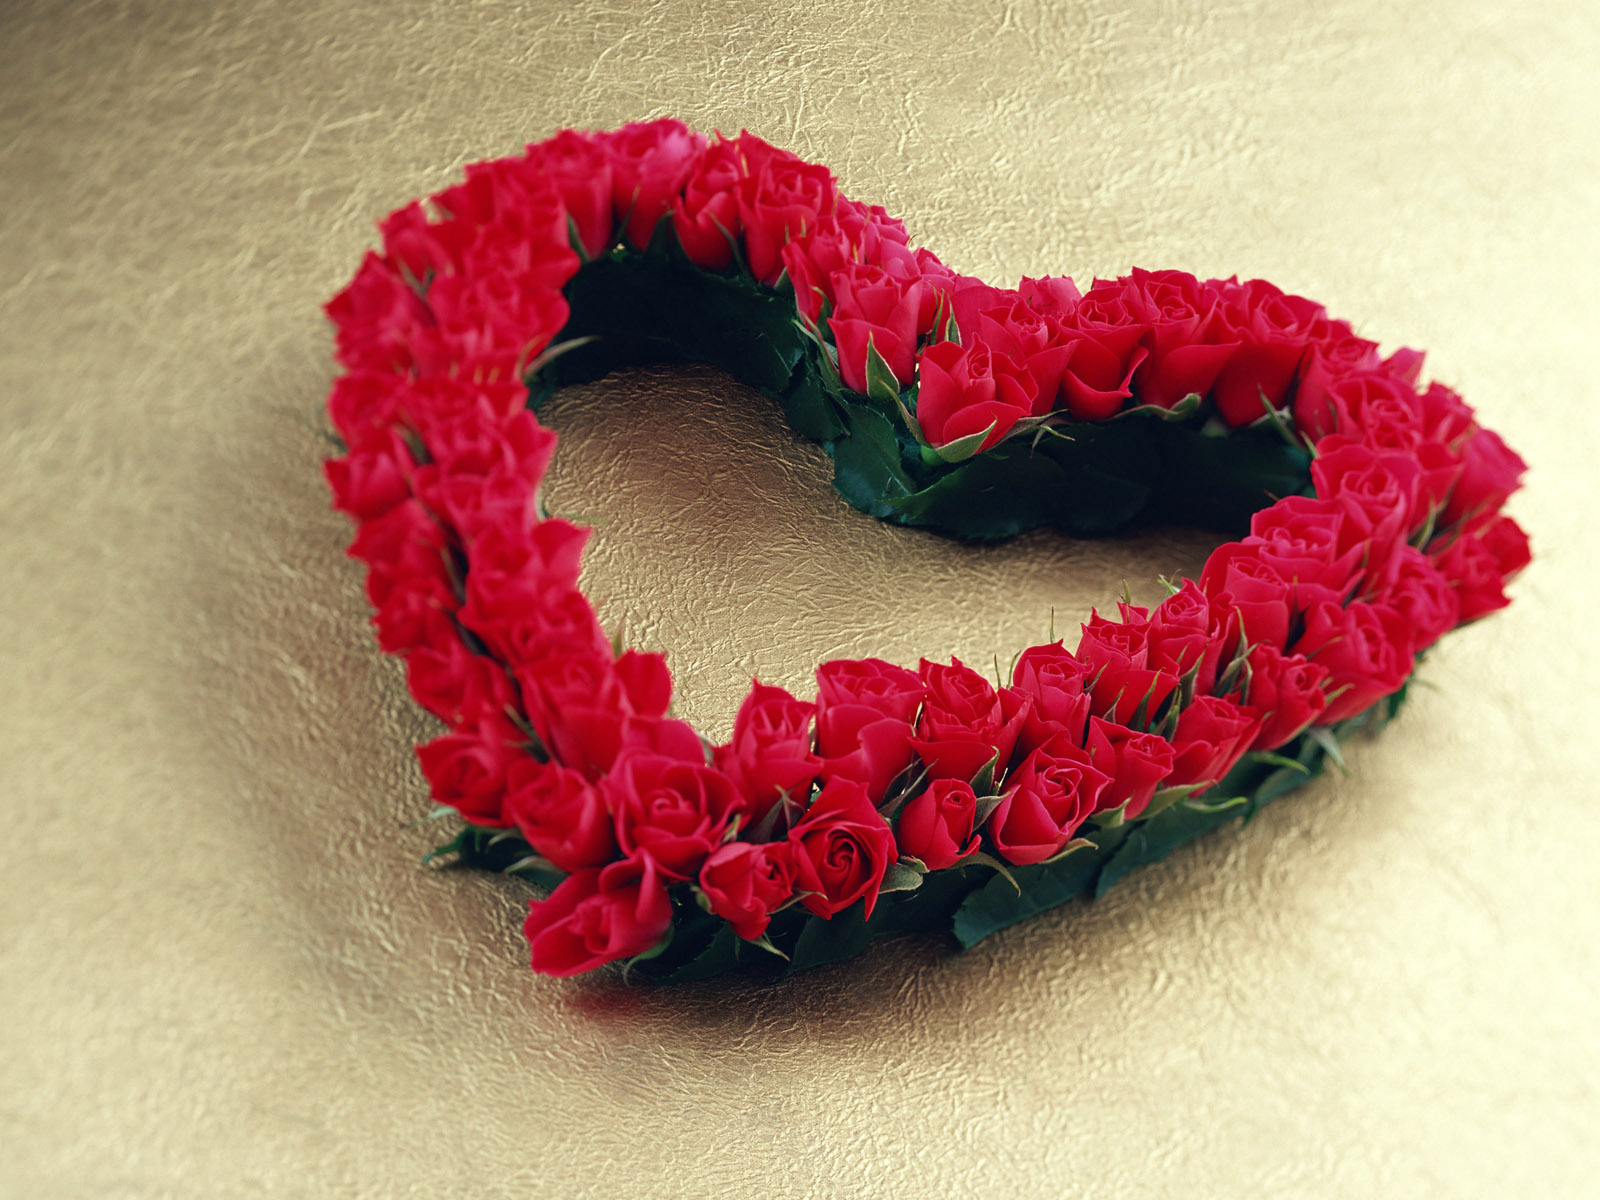 http://2.bp.blogspot.com/-Mj2cazg9MhY/T-6tnNNEn3I/AAAAAAAAB4A/fp-e8YCVTX4/s1600/free-love-heart-shaped-flower-Love+Pictures.jpg